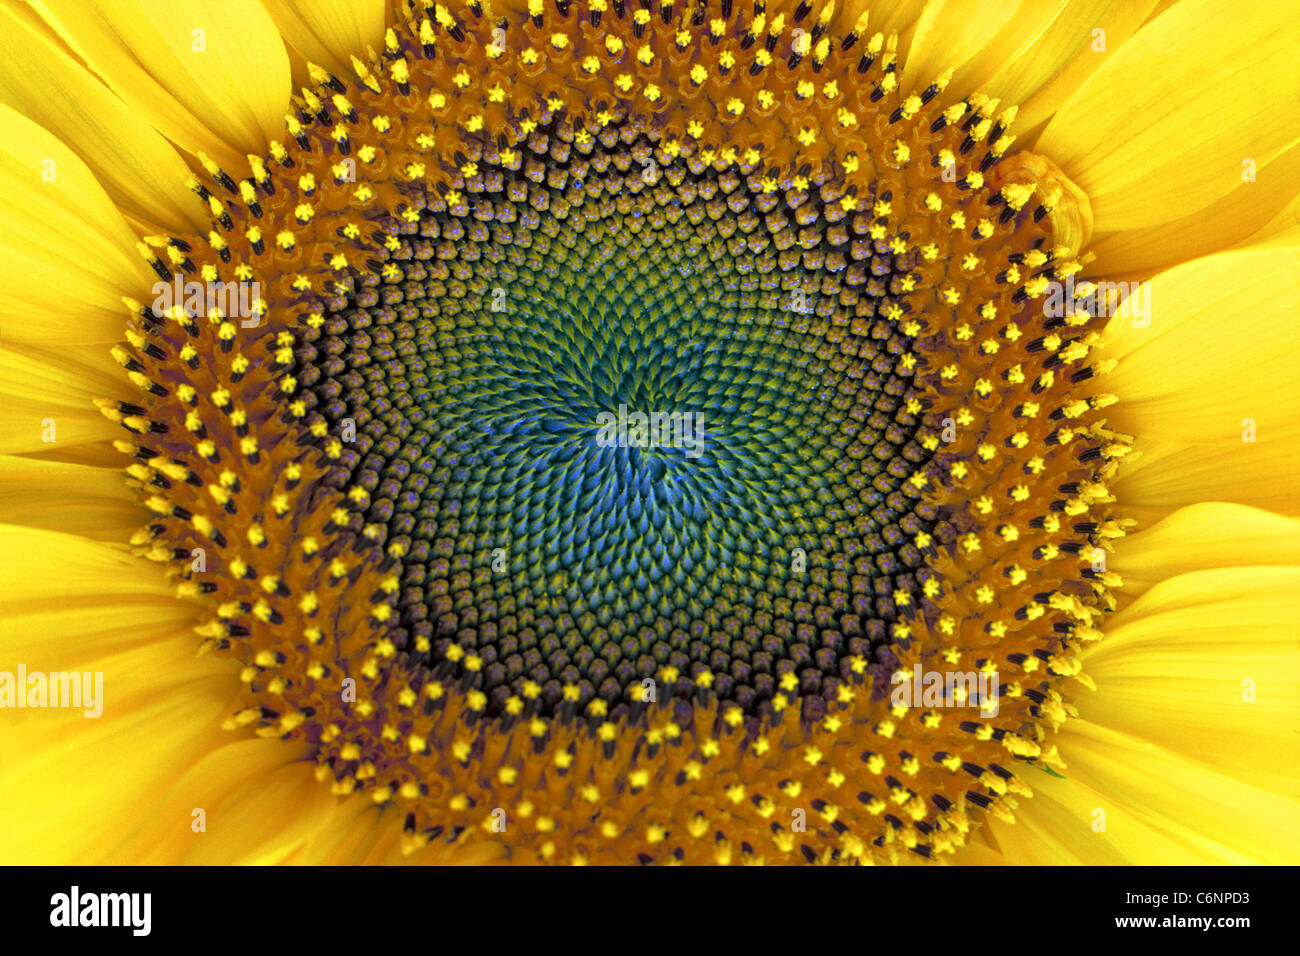 Diese Nahaufnahme des großen Kopfes der Sonnenblume zeigt die winzigen gelben Blüten, die grüne unreife Samen in der Mitte dieser Lebensmittel Pflanze umschließen. Stockfoto